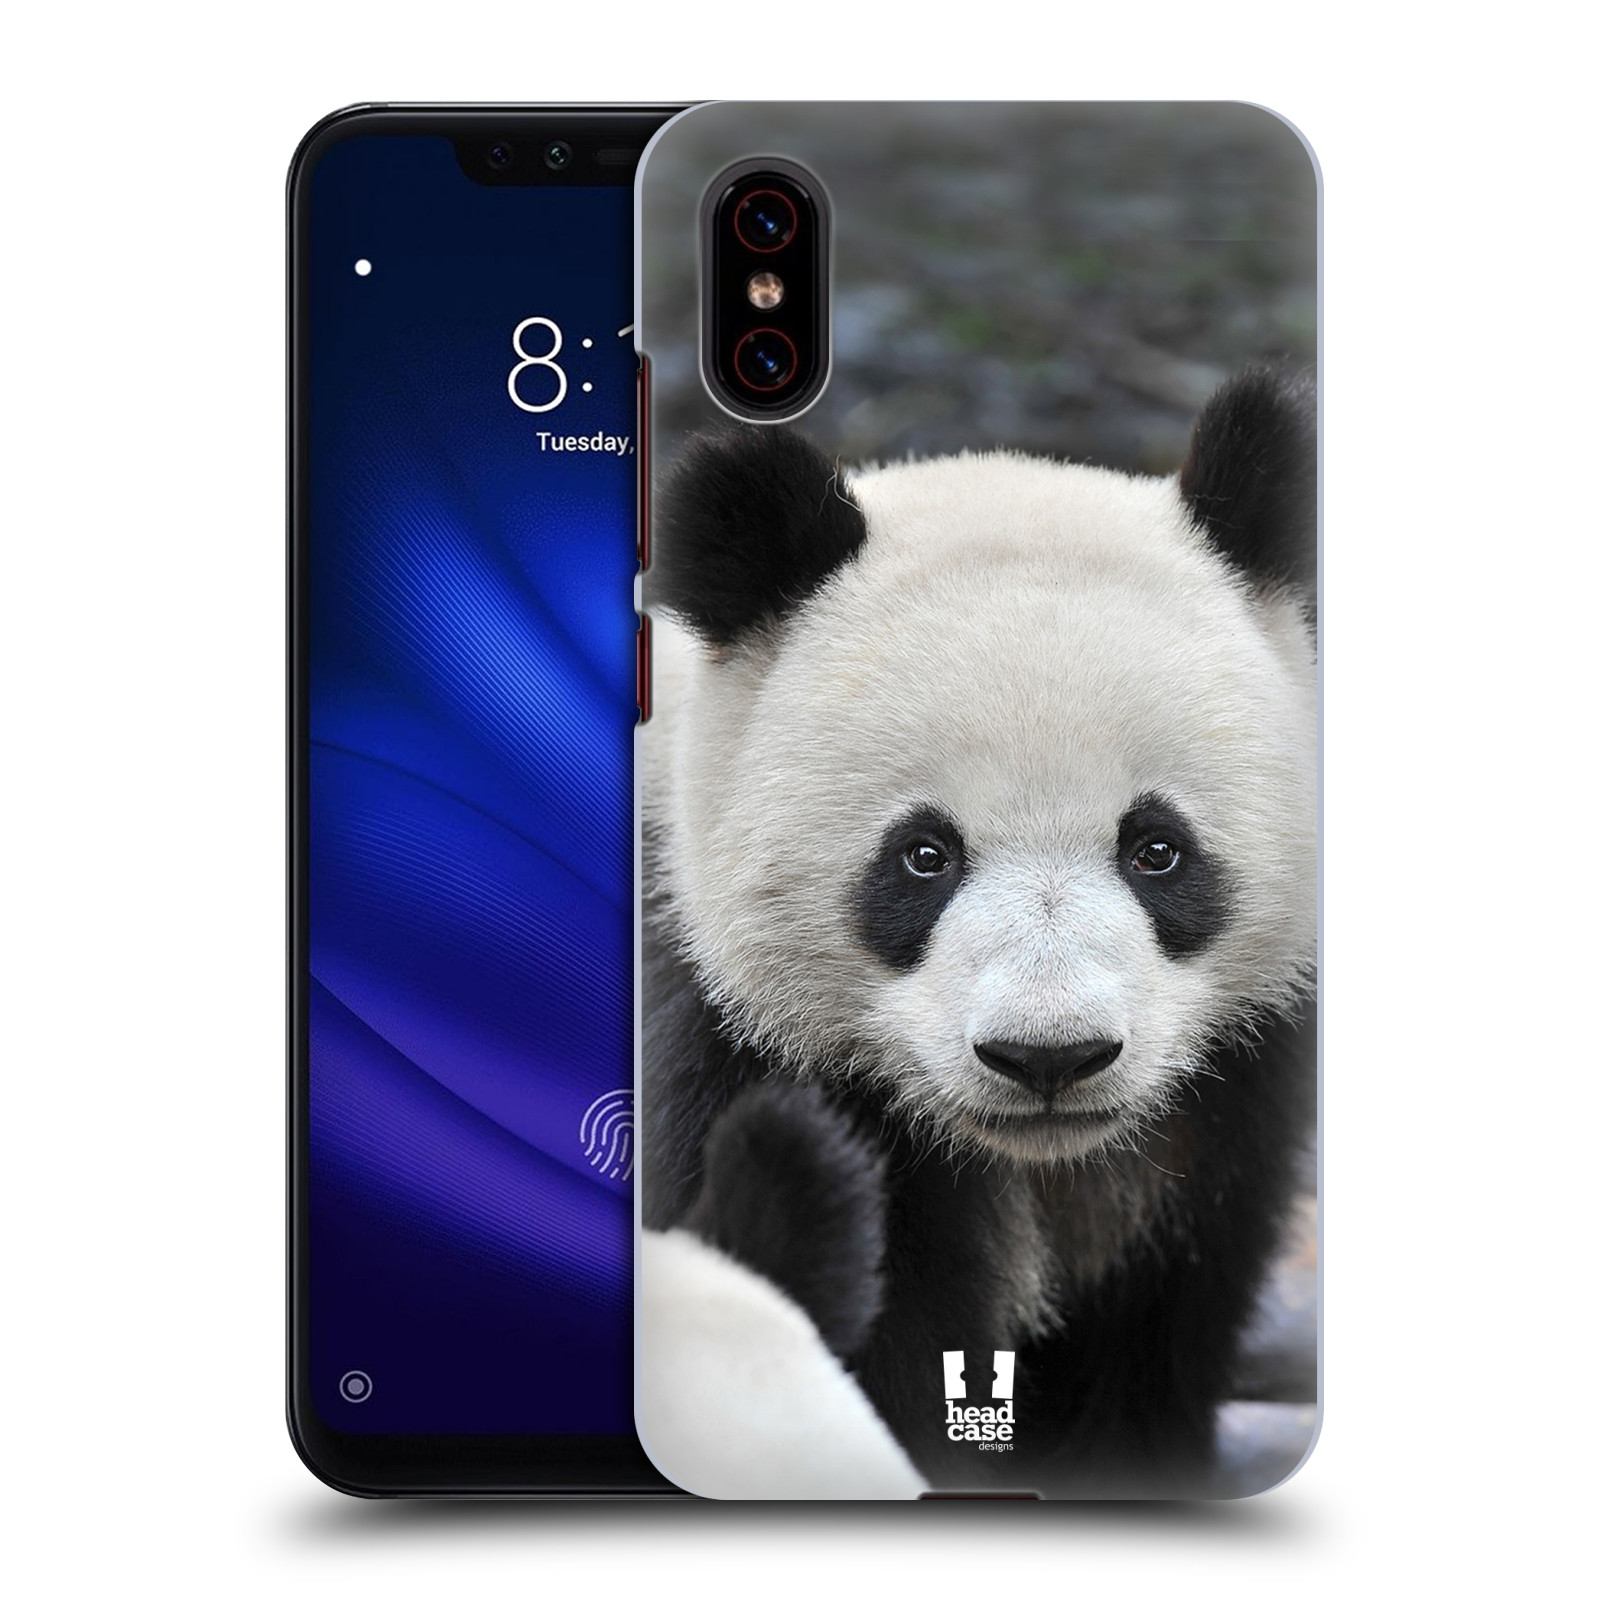 Zadní obal pro mobil Xiaomi Mi 8 PRO - HEAD CASE - Svět zvířat medvěd panda